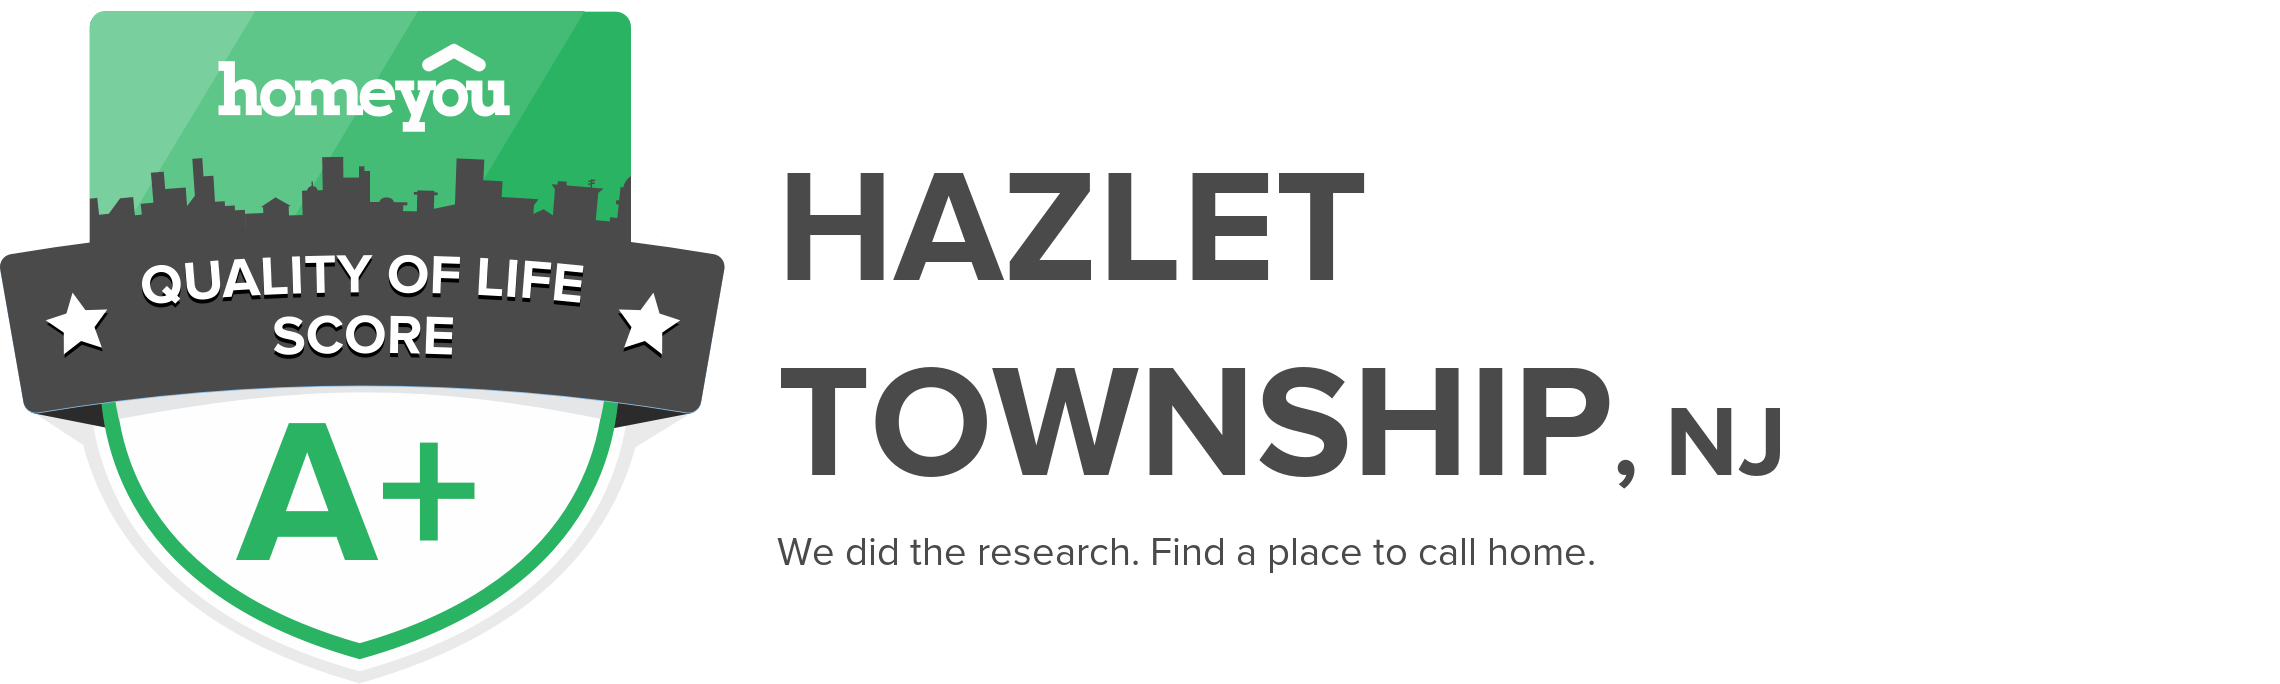 Hazlet Township, NJ